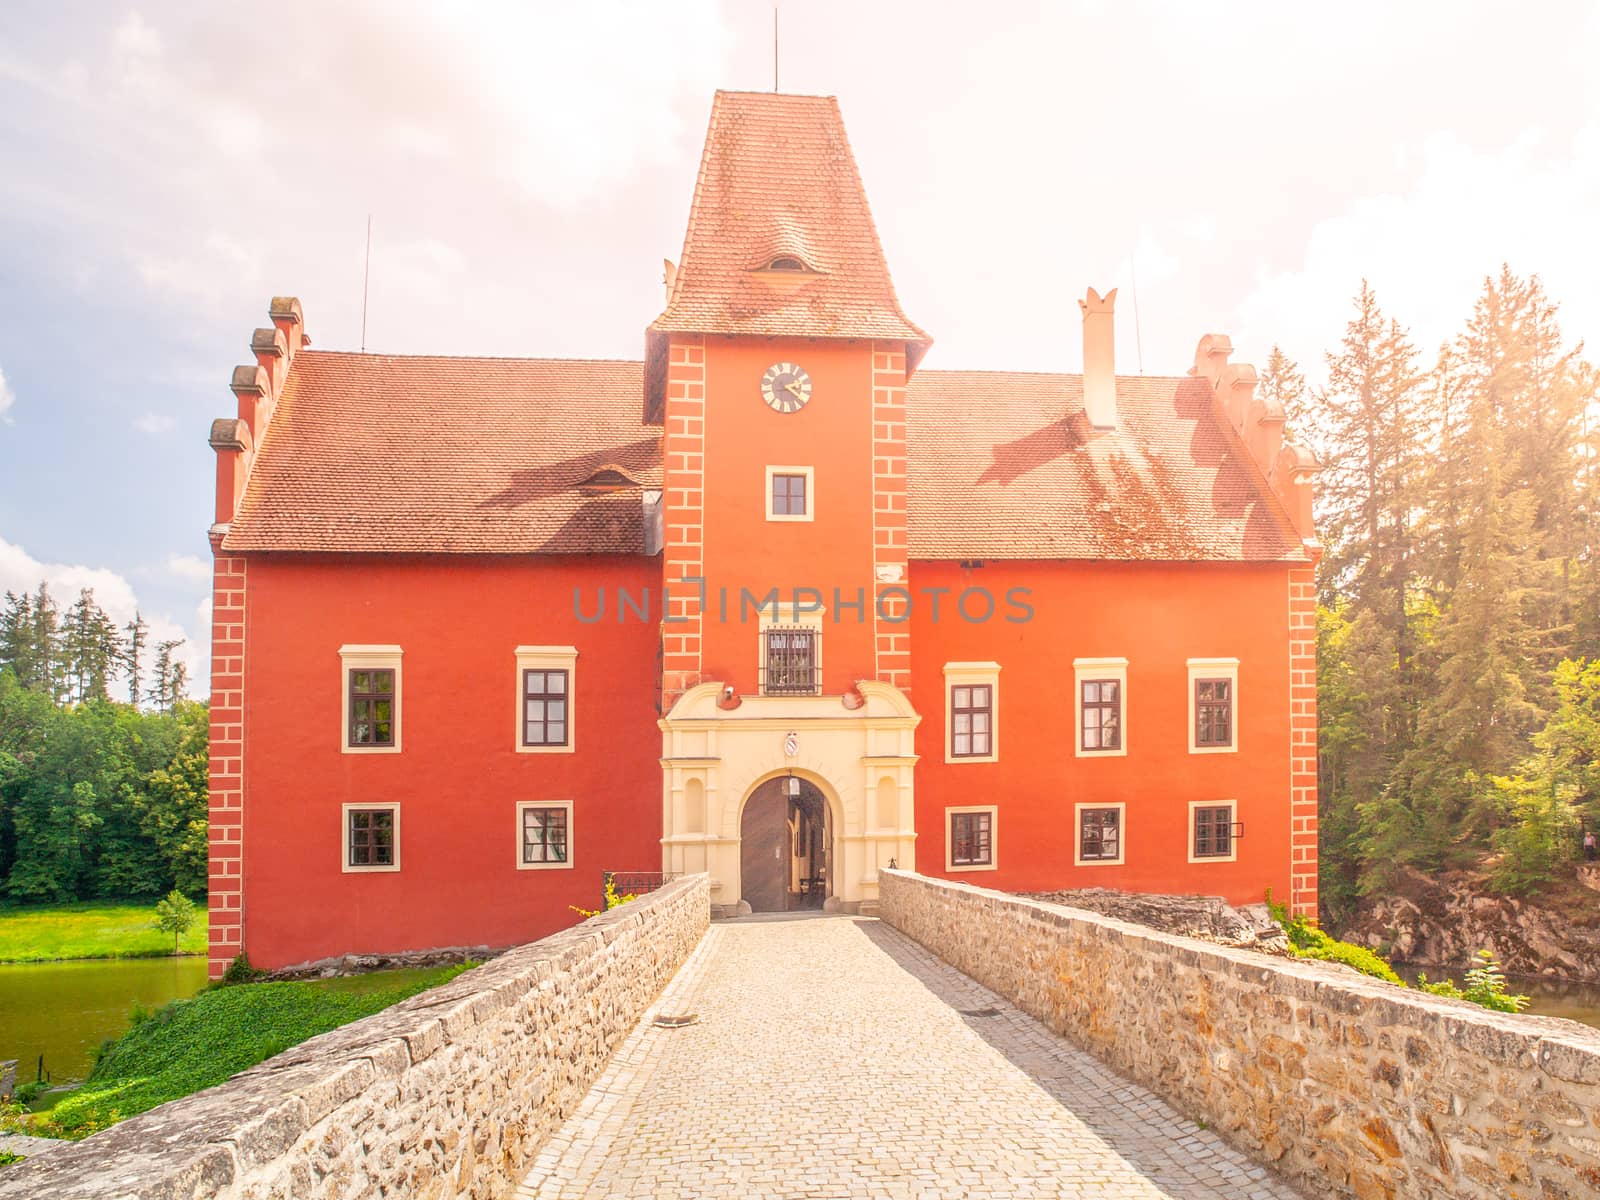 Main entrance to Cervena Lhota - romantic red water castle, Czech Republic.